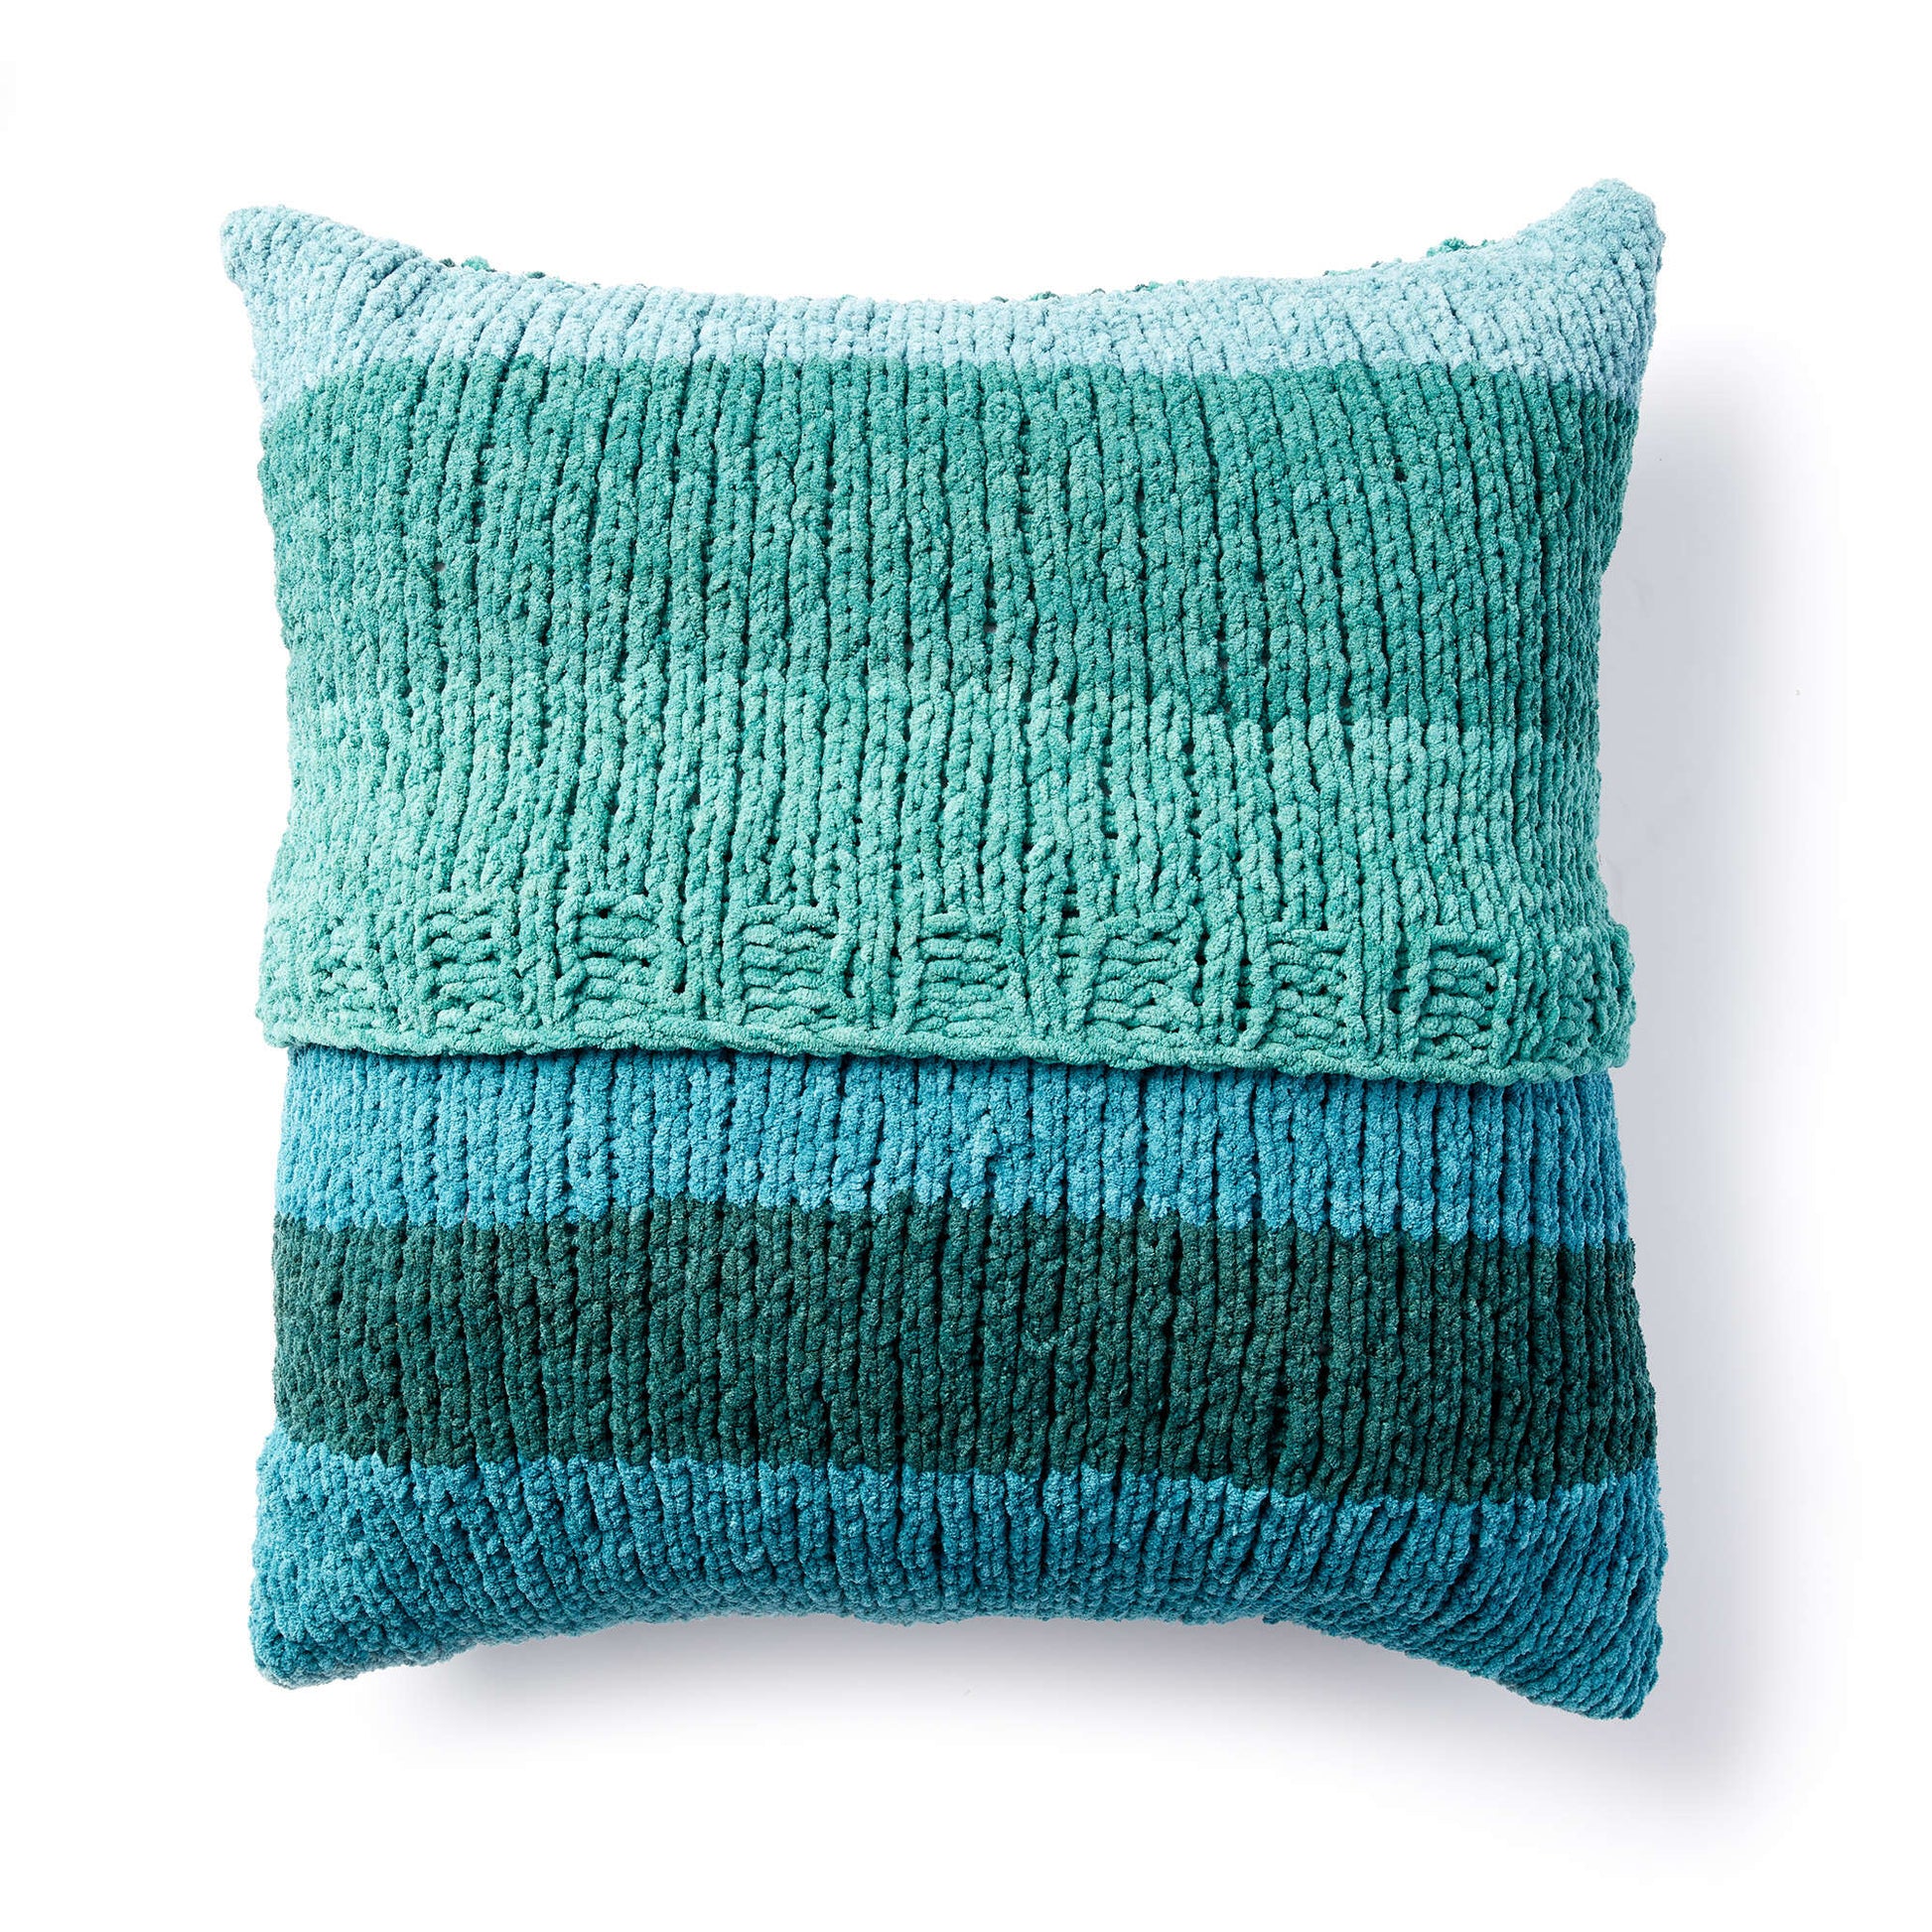 Free Bernat Linen Stitch Knit Pillow Pattern